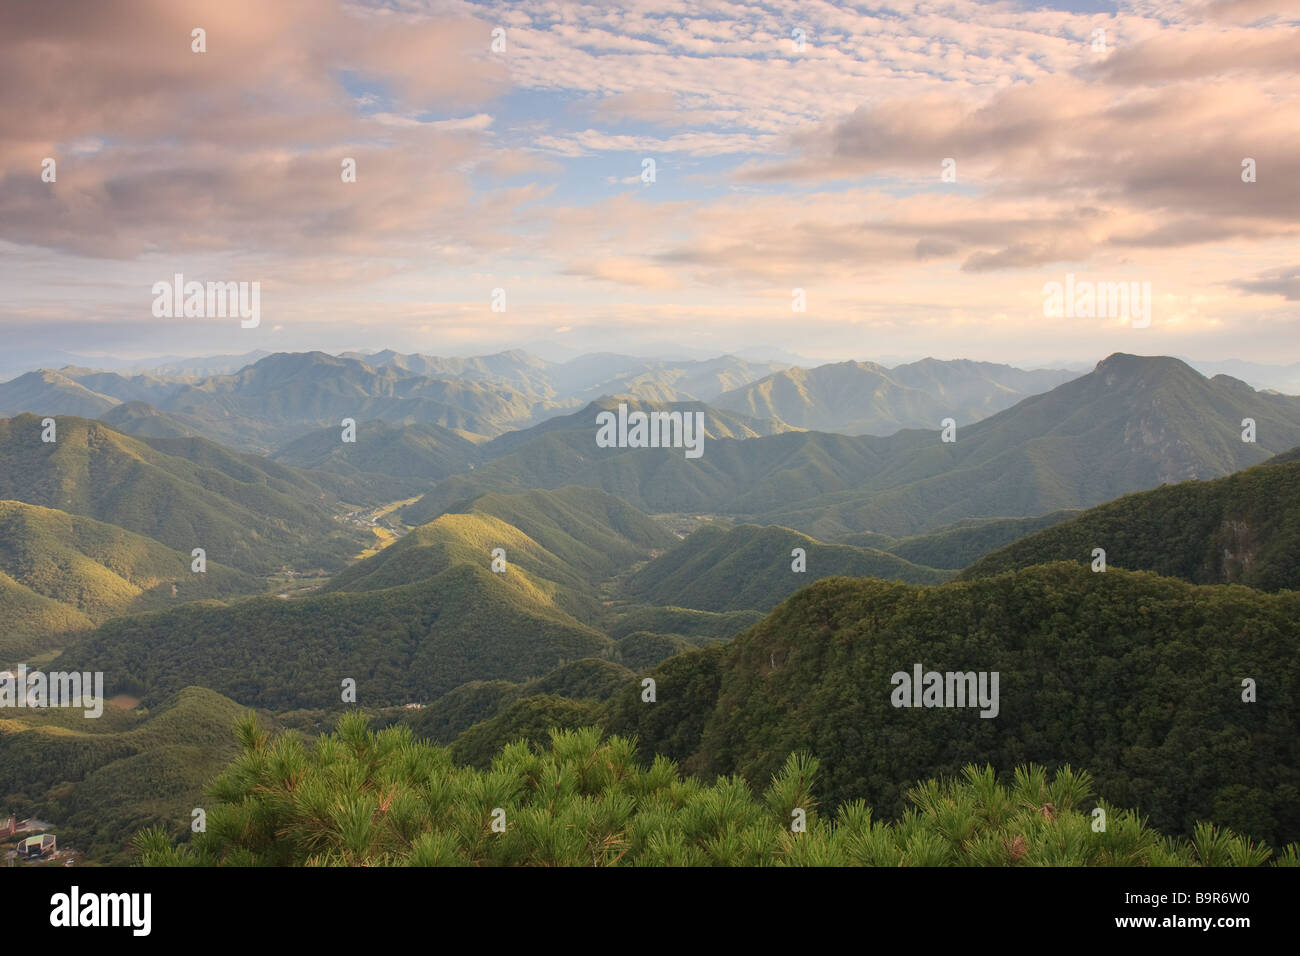 Montagnes Sobaek vert, en Corée, au coucher du soleil Banque D'Images